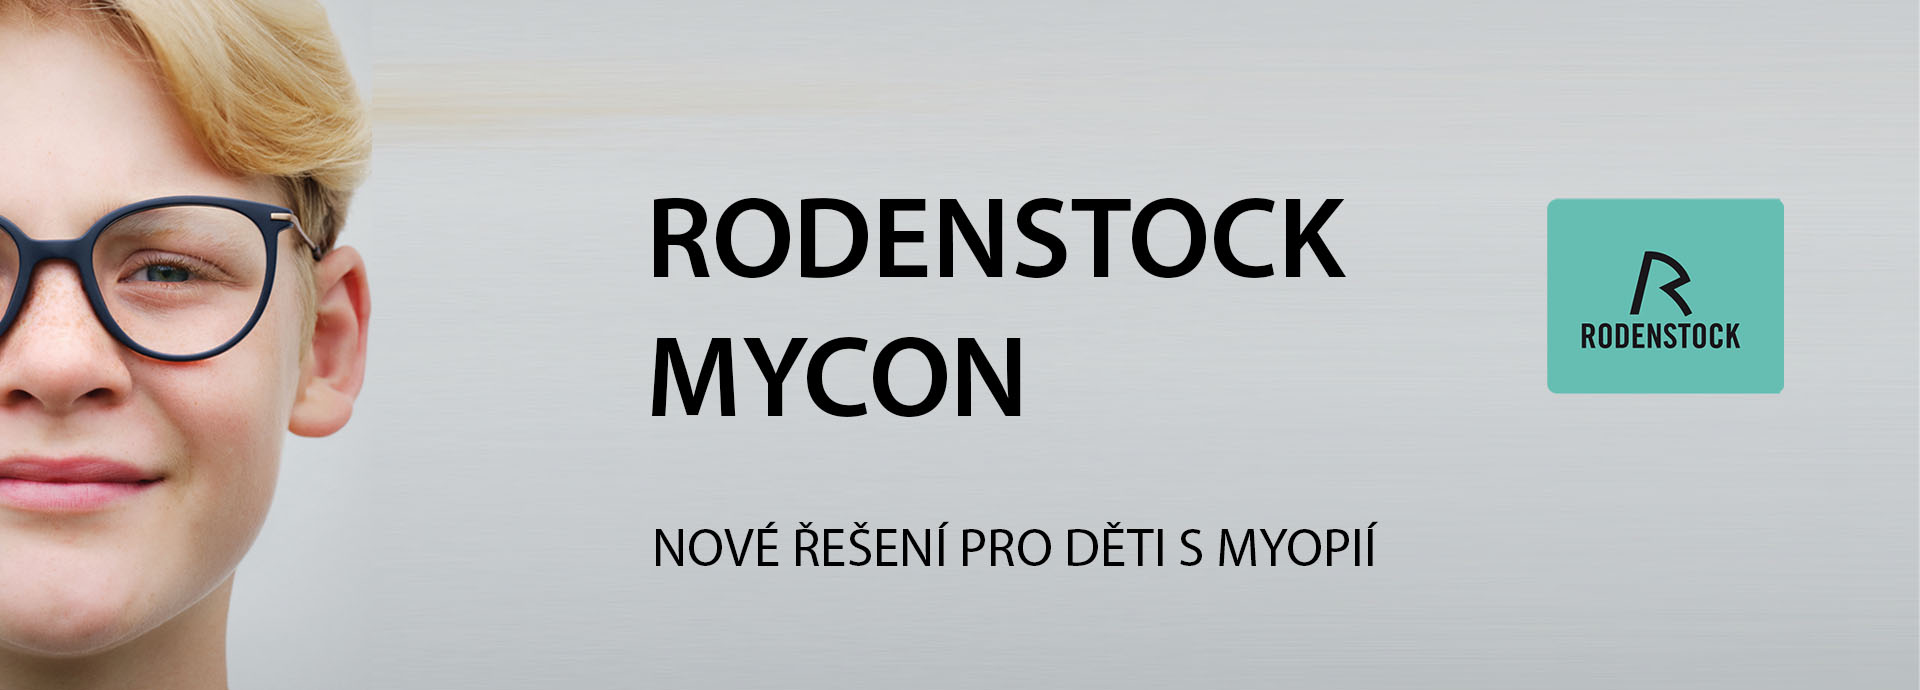 MyCon-1920x690